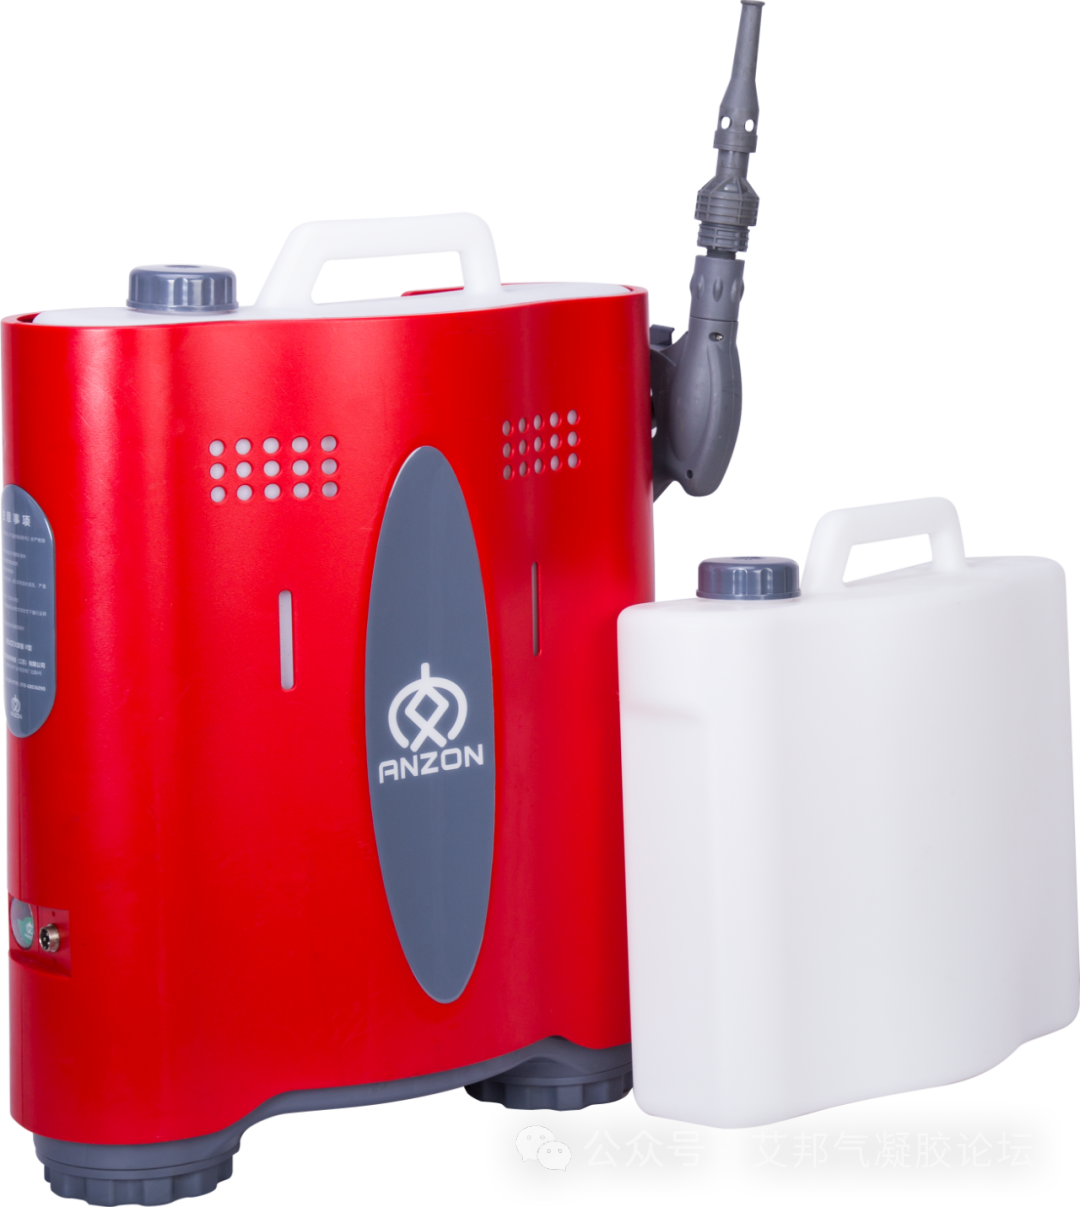 气凝胶在多种消防救援器材上的应用